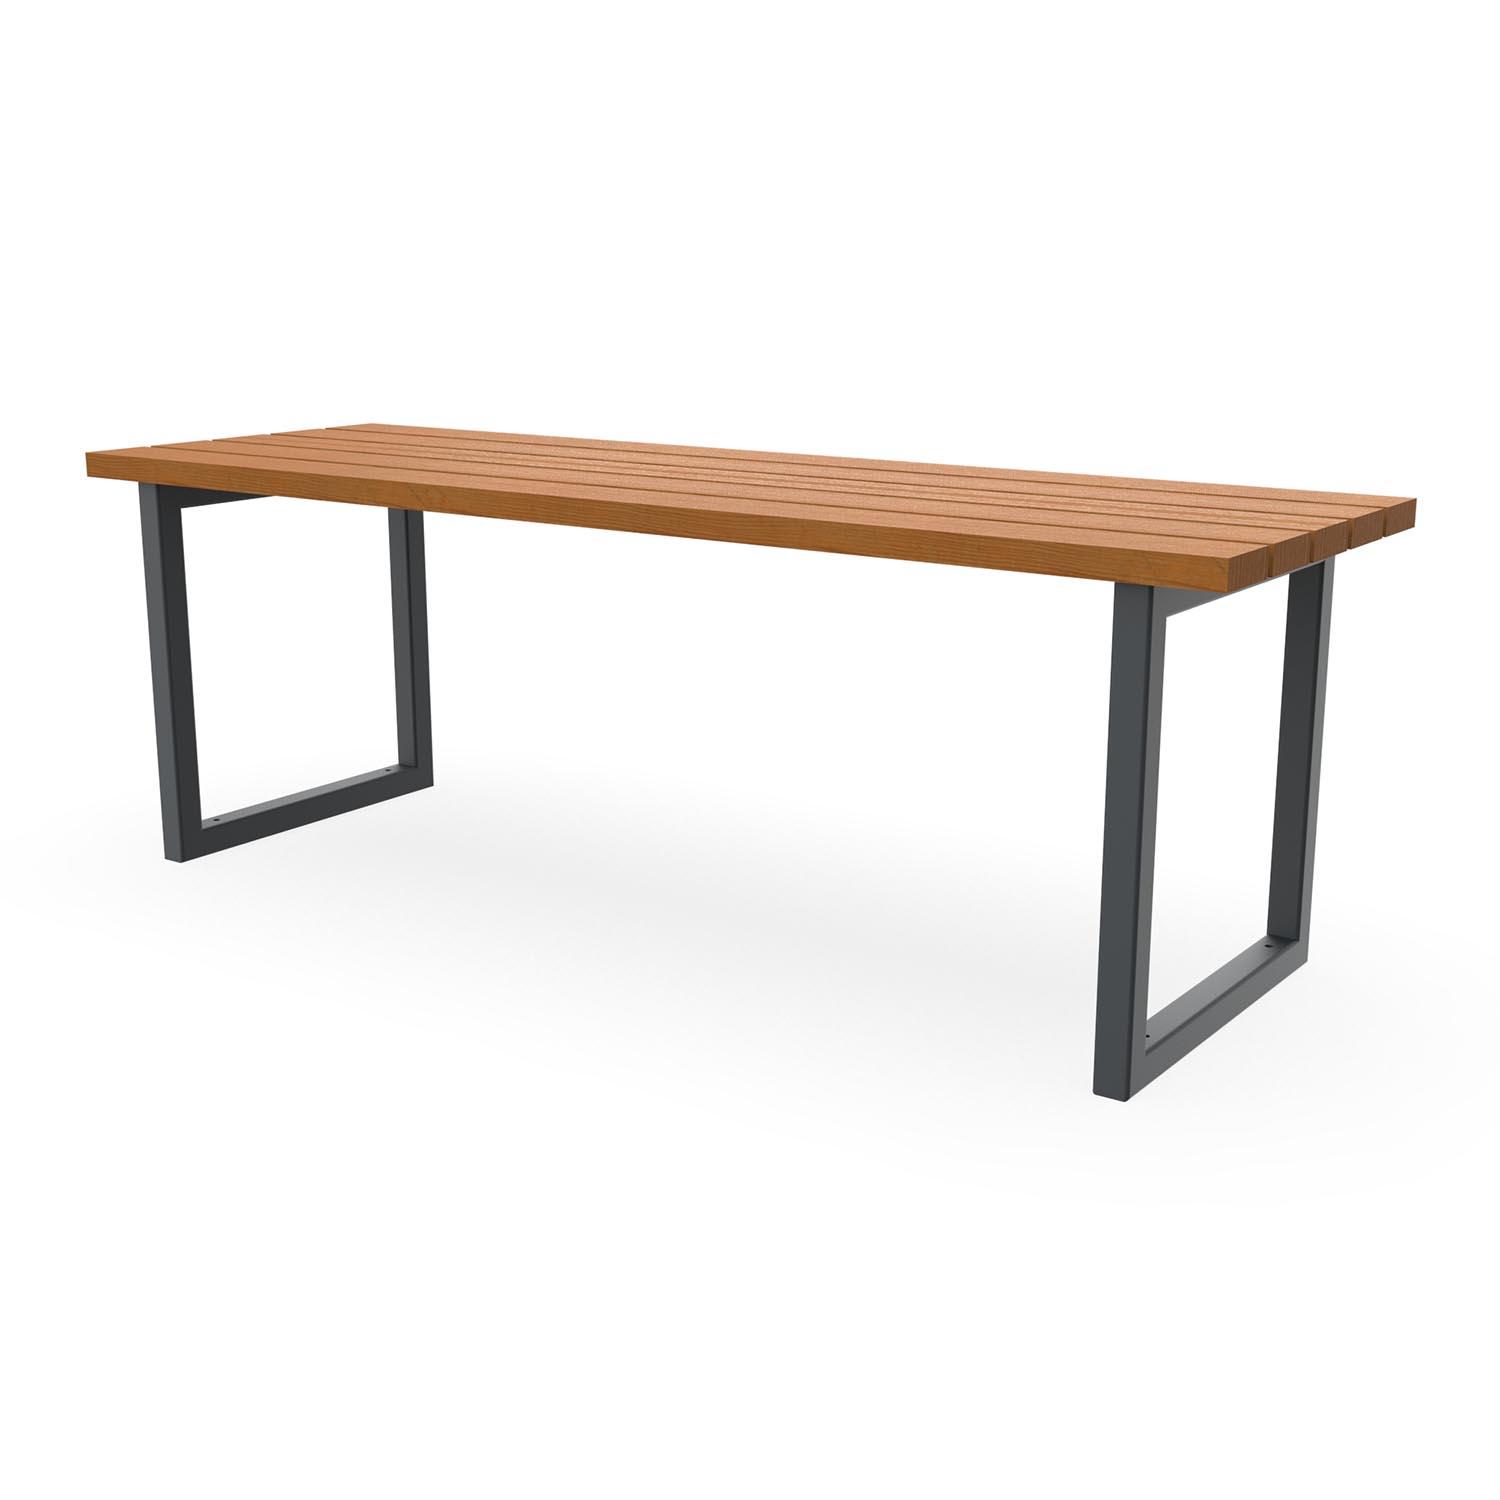 Tisch mit duplexbeschichtetem Gestell und Tischfläche aus Holz